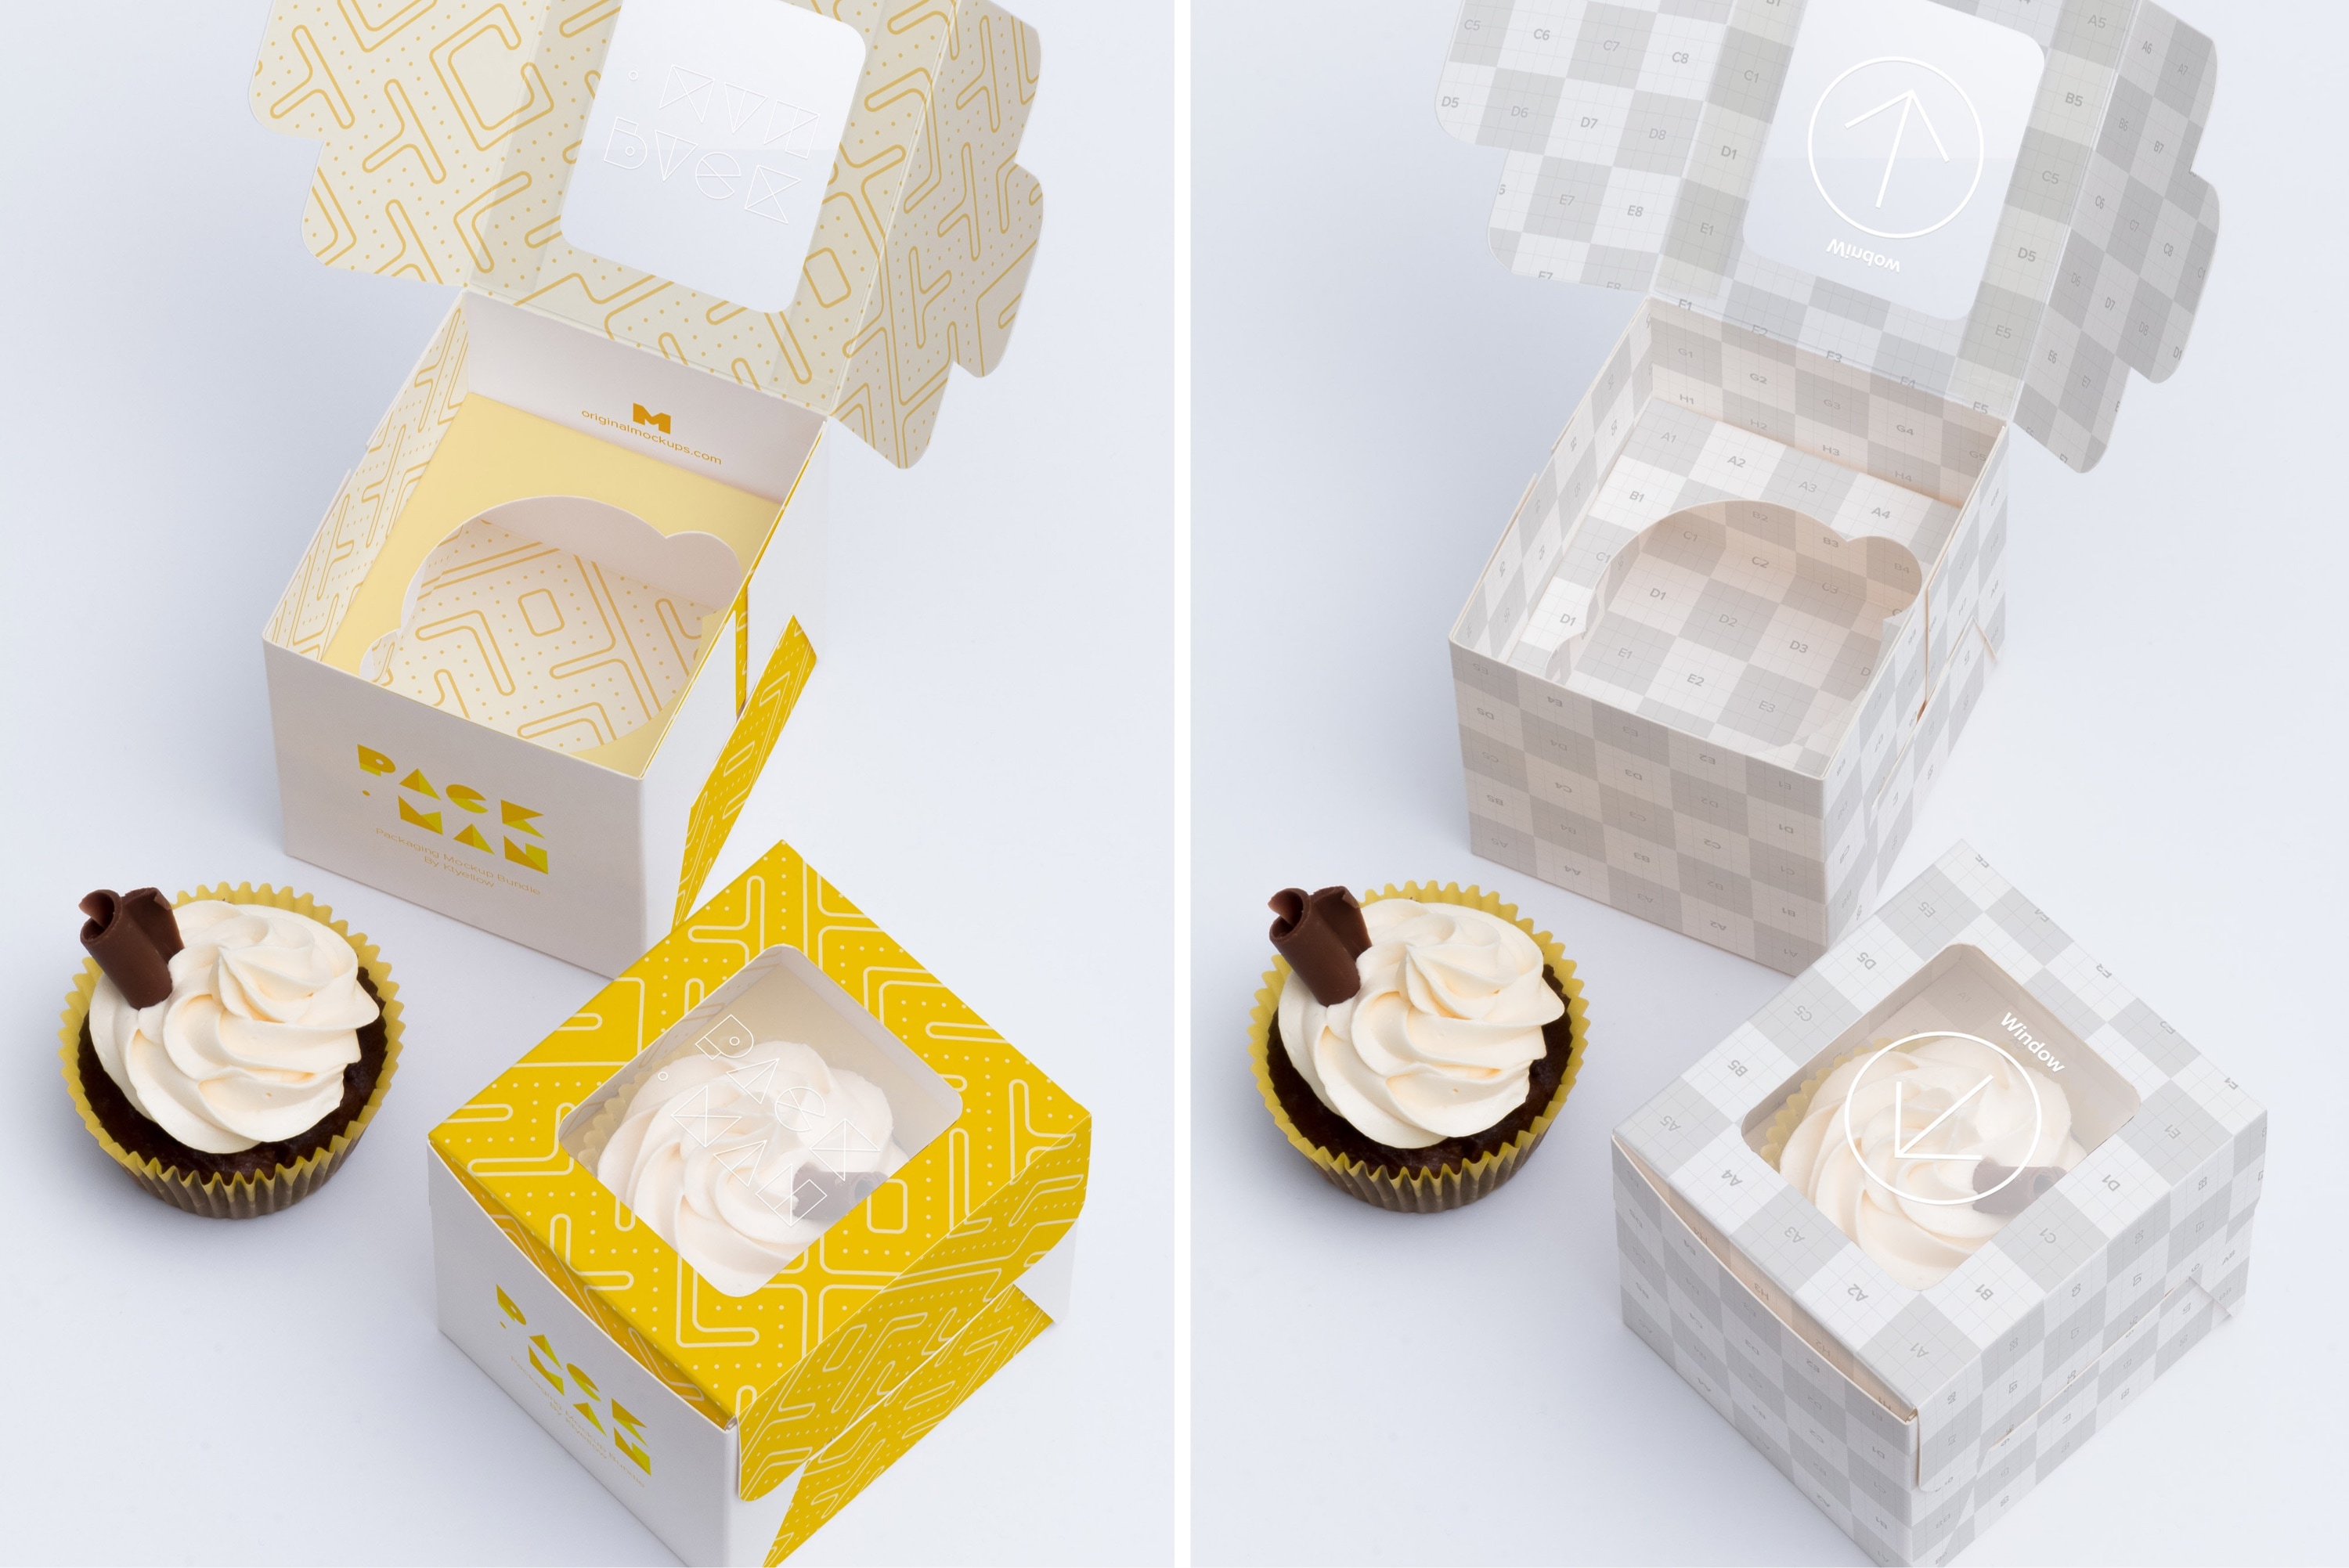 单只装纸杯蛋糕甜点包装盒设计效果图样机01 One Cupcake Box Mockup 01插图(2)